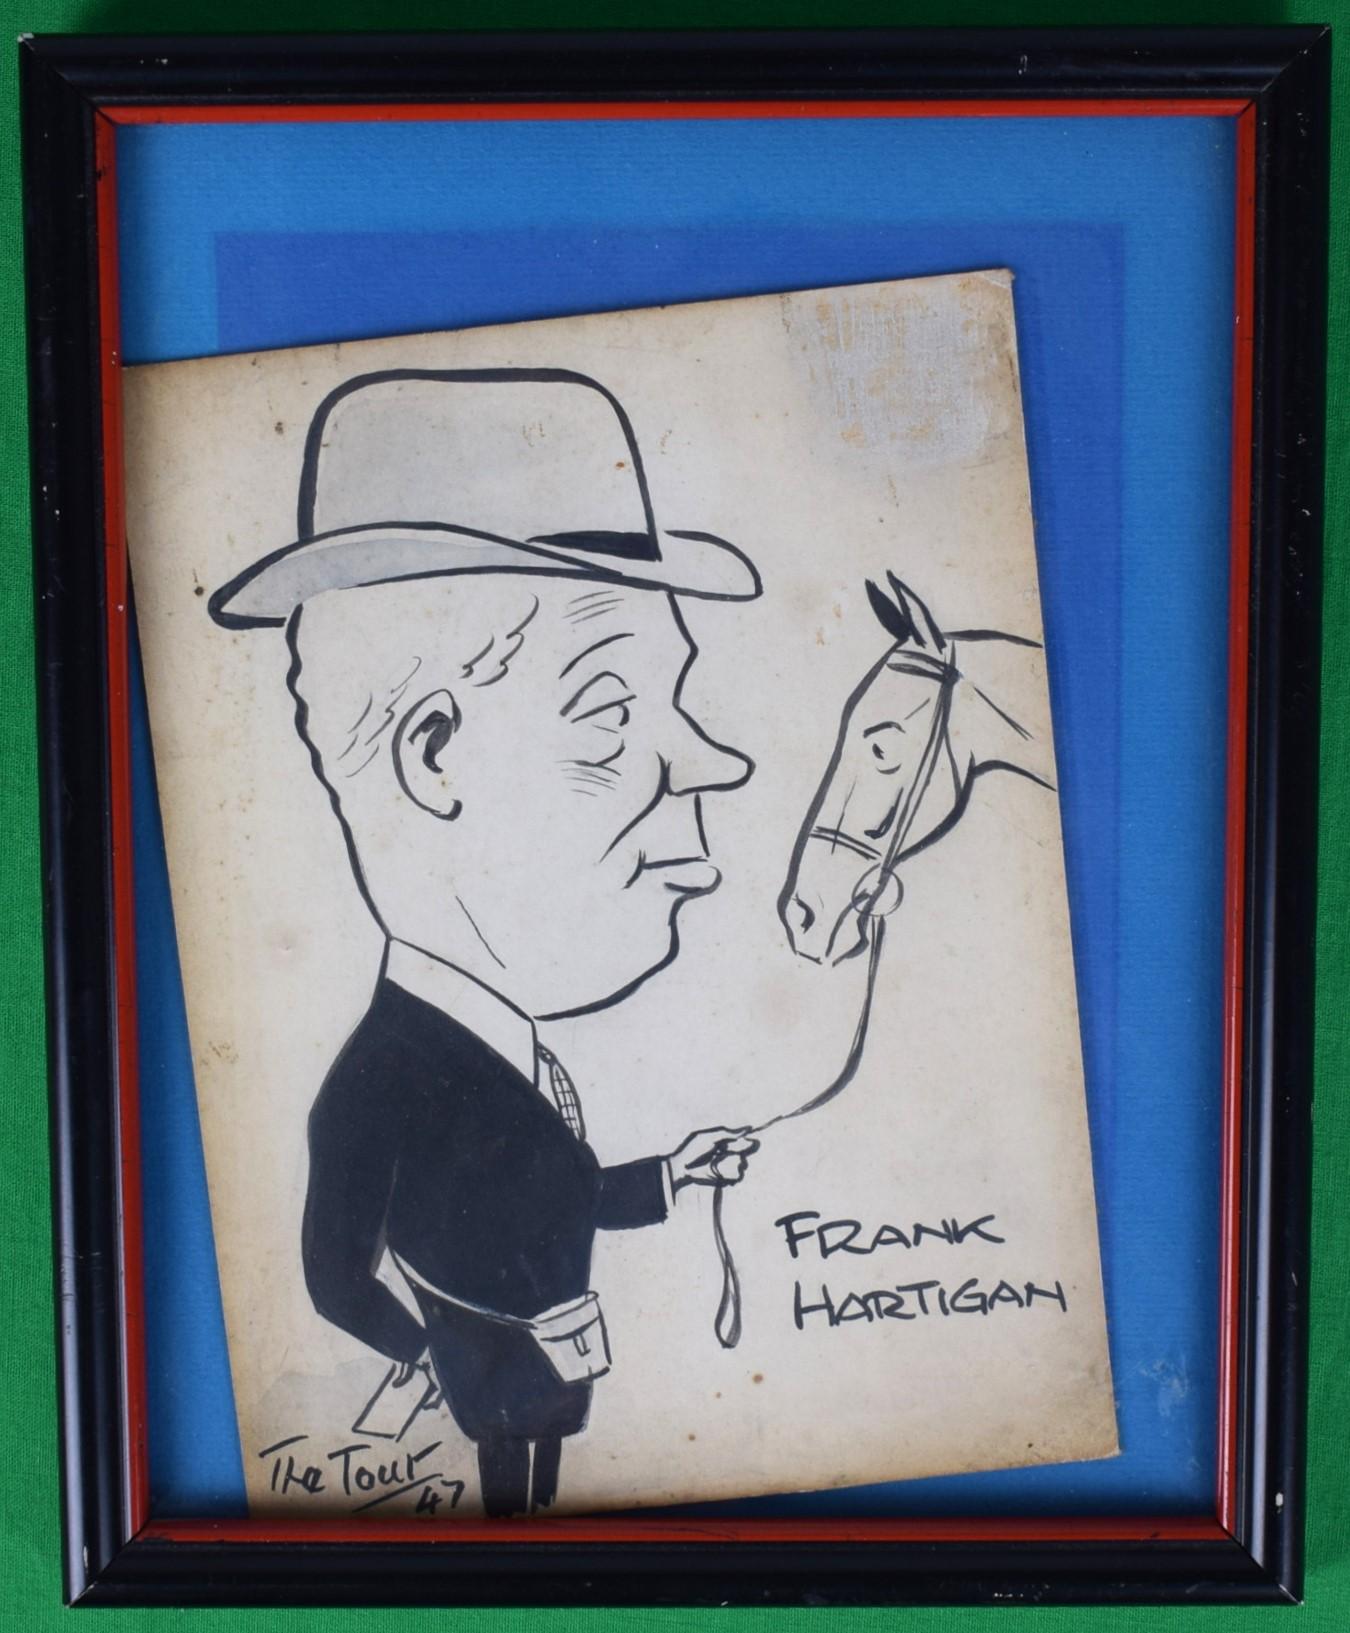 Frank Hartigan Pferdetrainer 1947 Stift & Tinte mit Aquarell von "The Tout" – Art von Peter Buchanan